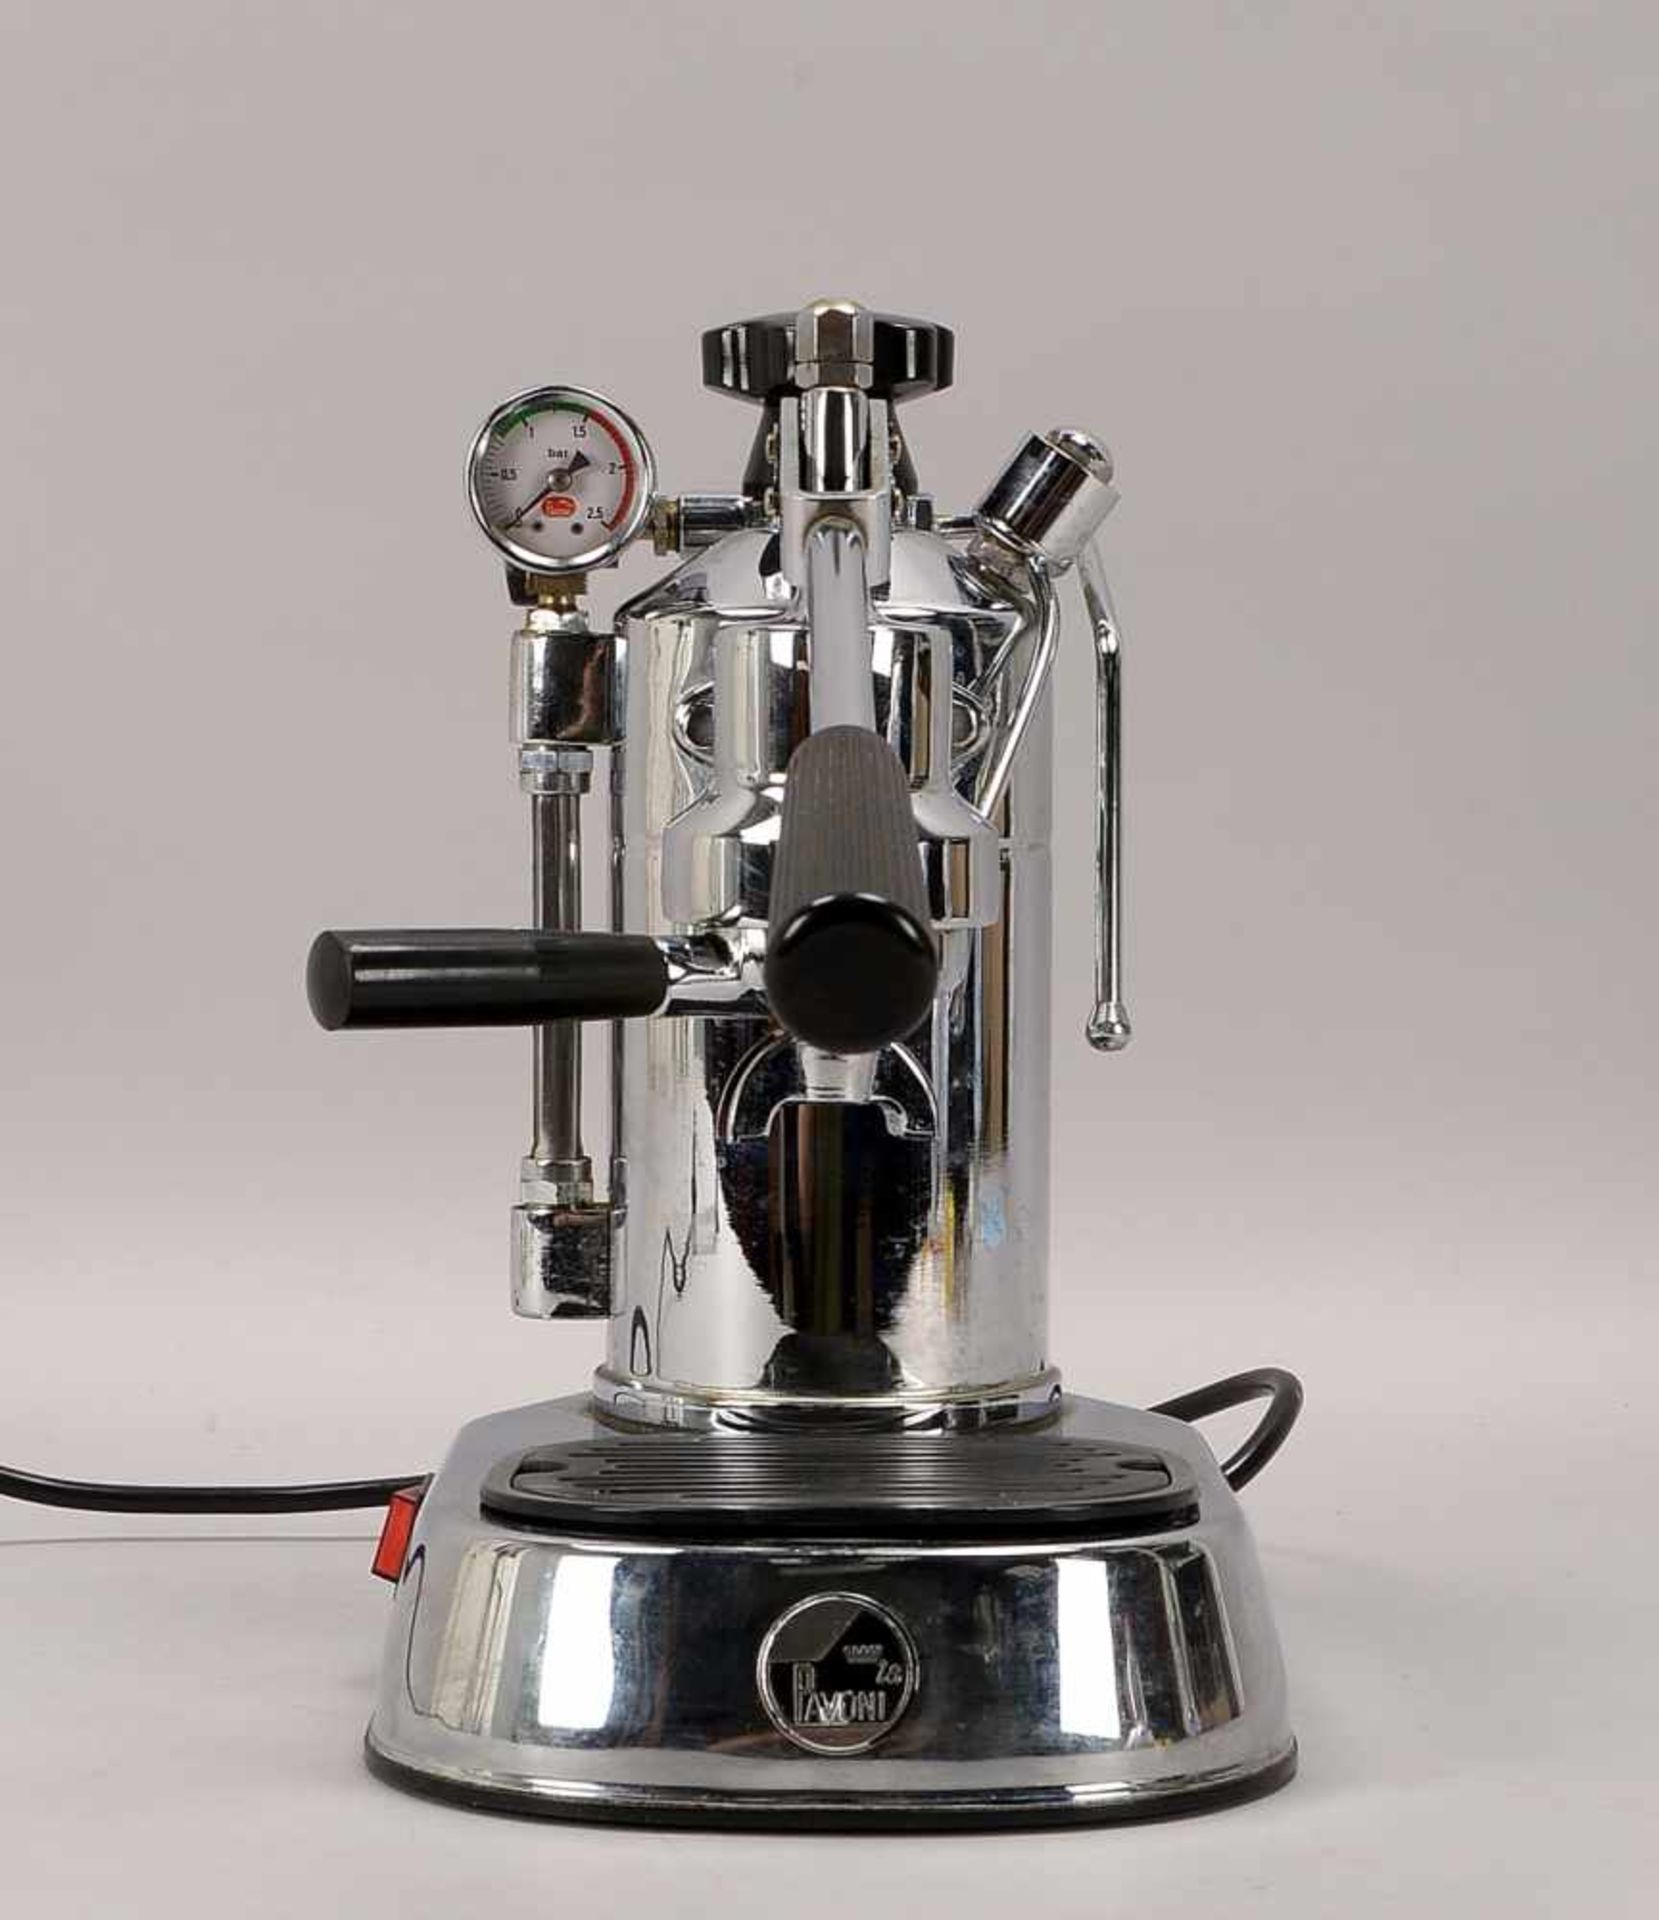 Espressomaschine, 'La Pavoni', Modell 'Professional' (zählt zu den 'Klassikern'), verchromtes - Bild 2 aus 3